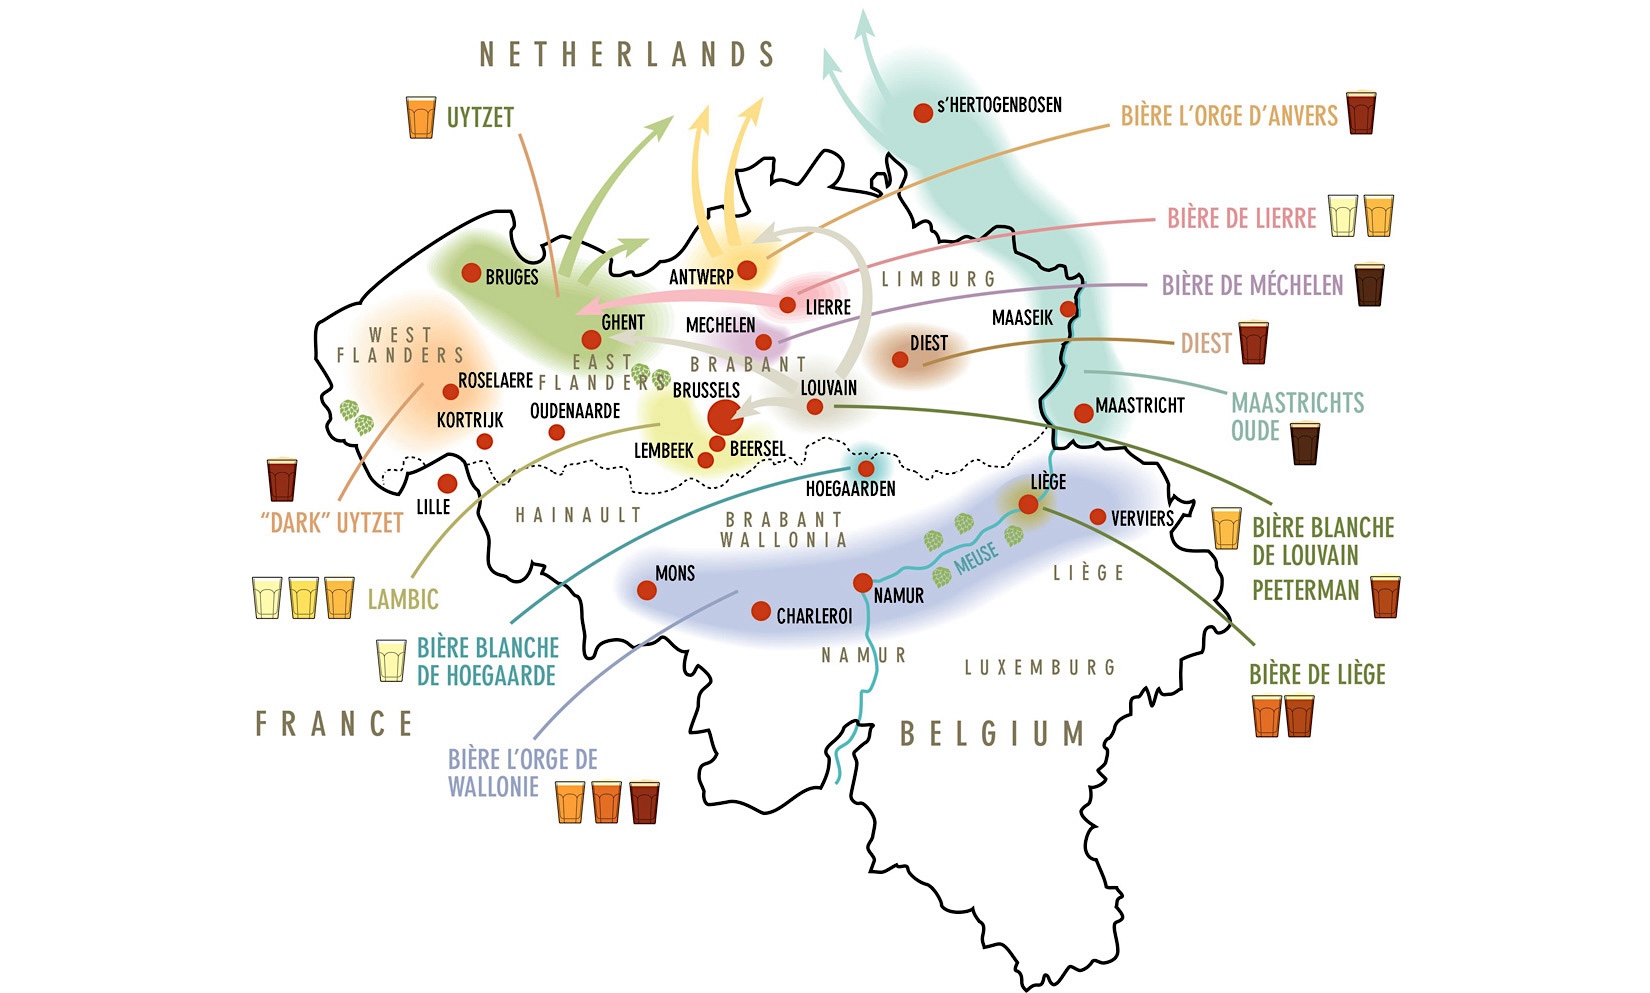 Belgium BeerMapr